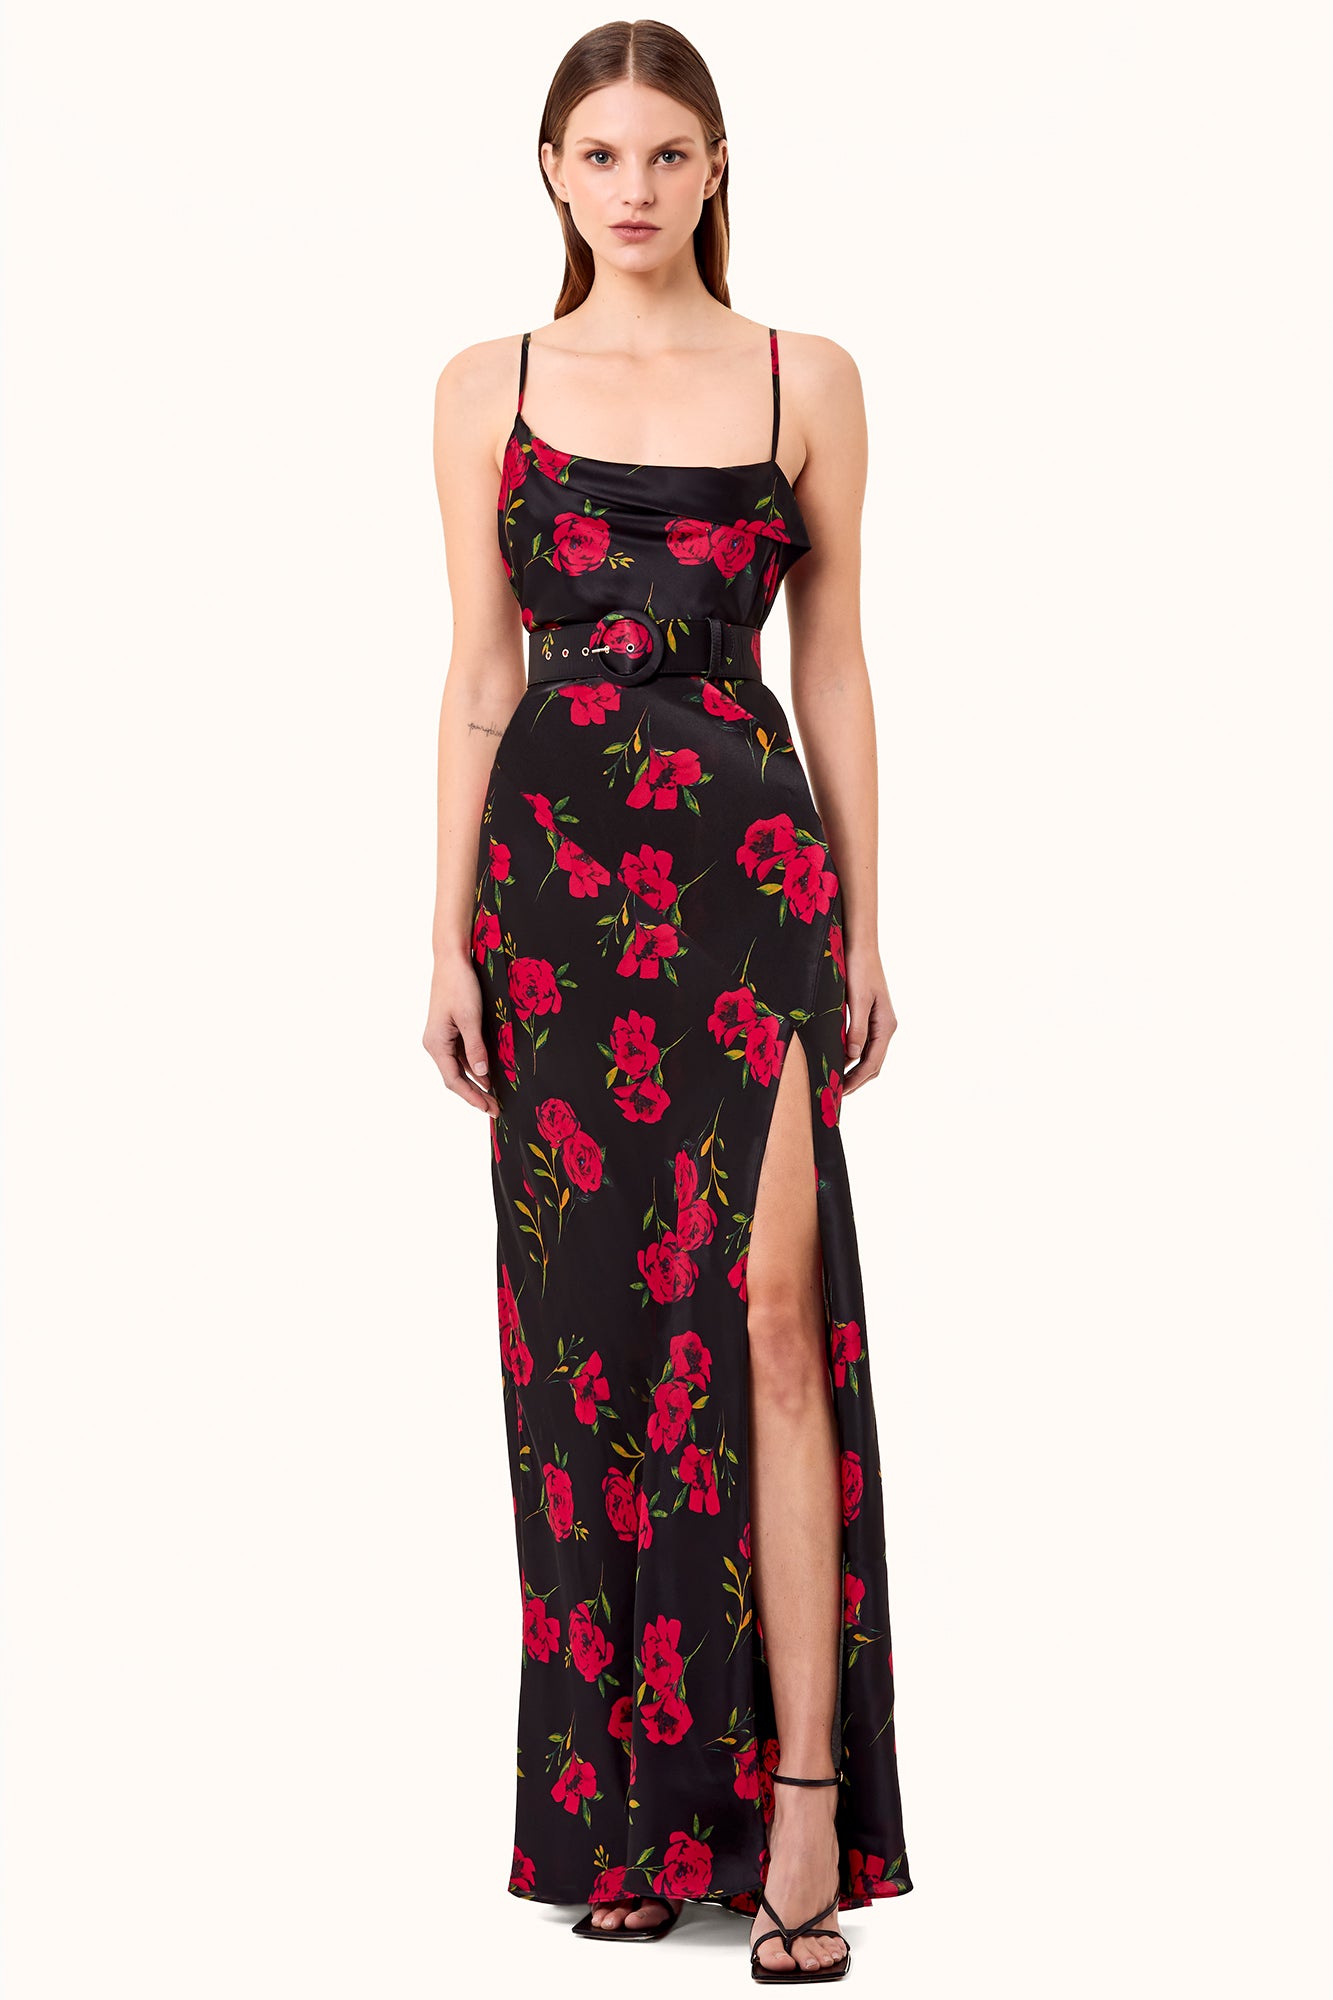 Belira Dress - Magenta Rose Print